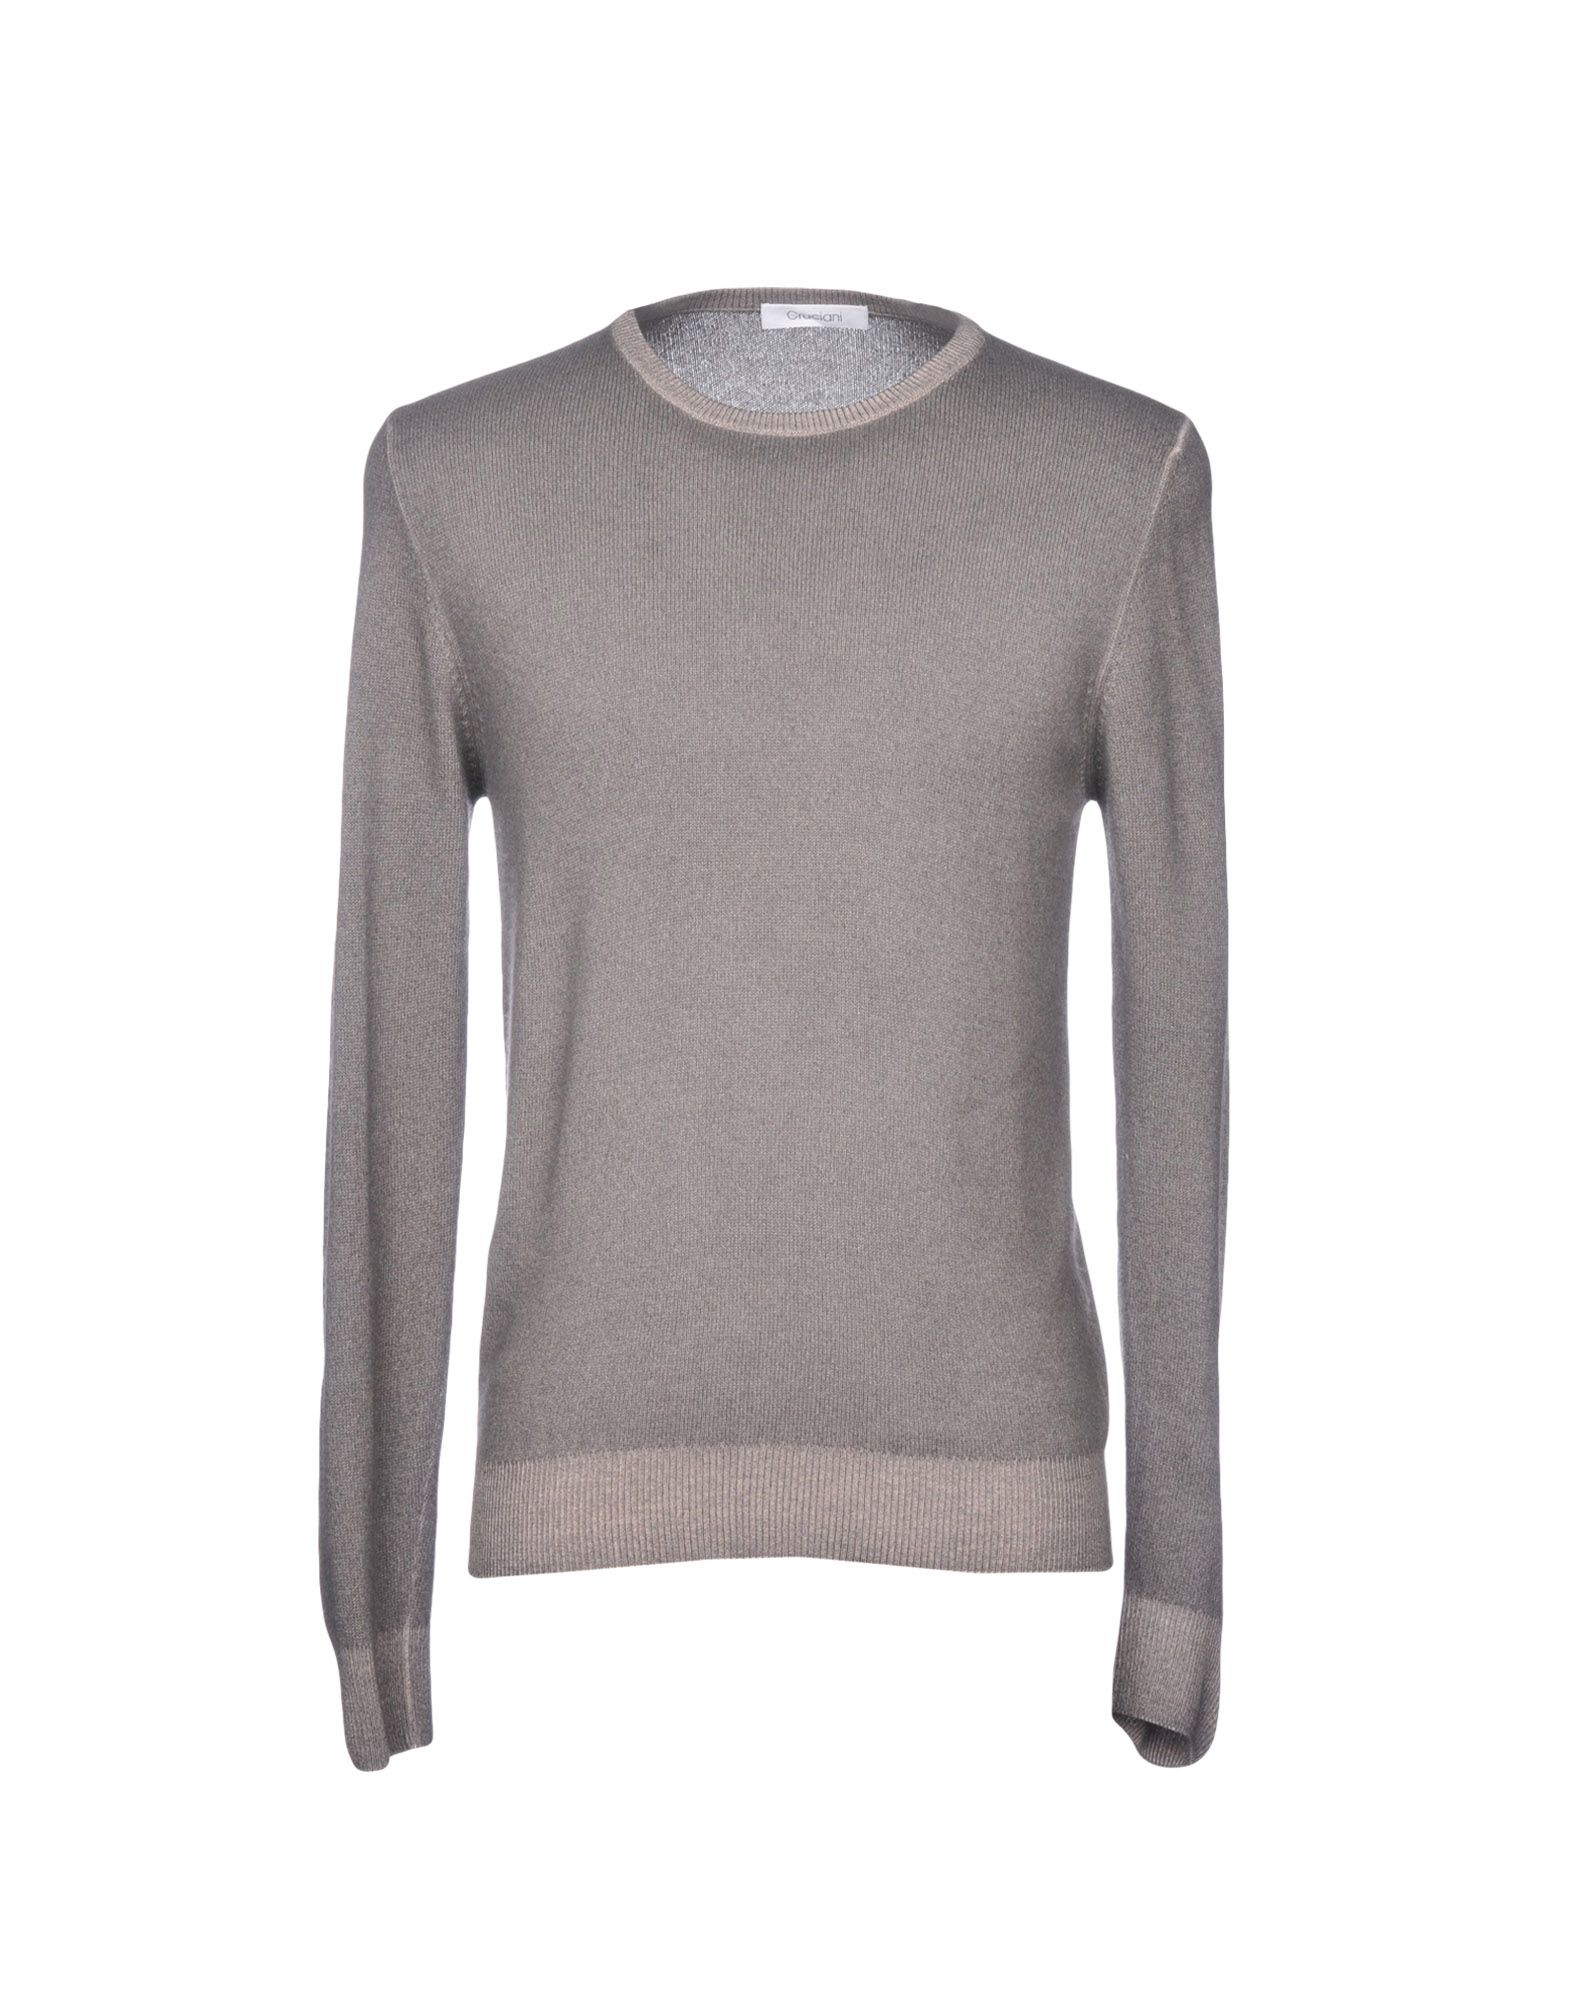 Cruciani Sweaters In Dove Grey